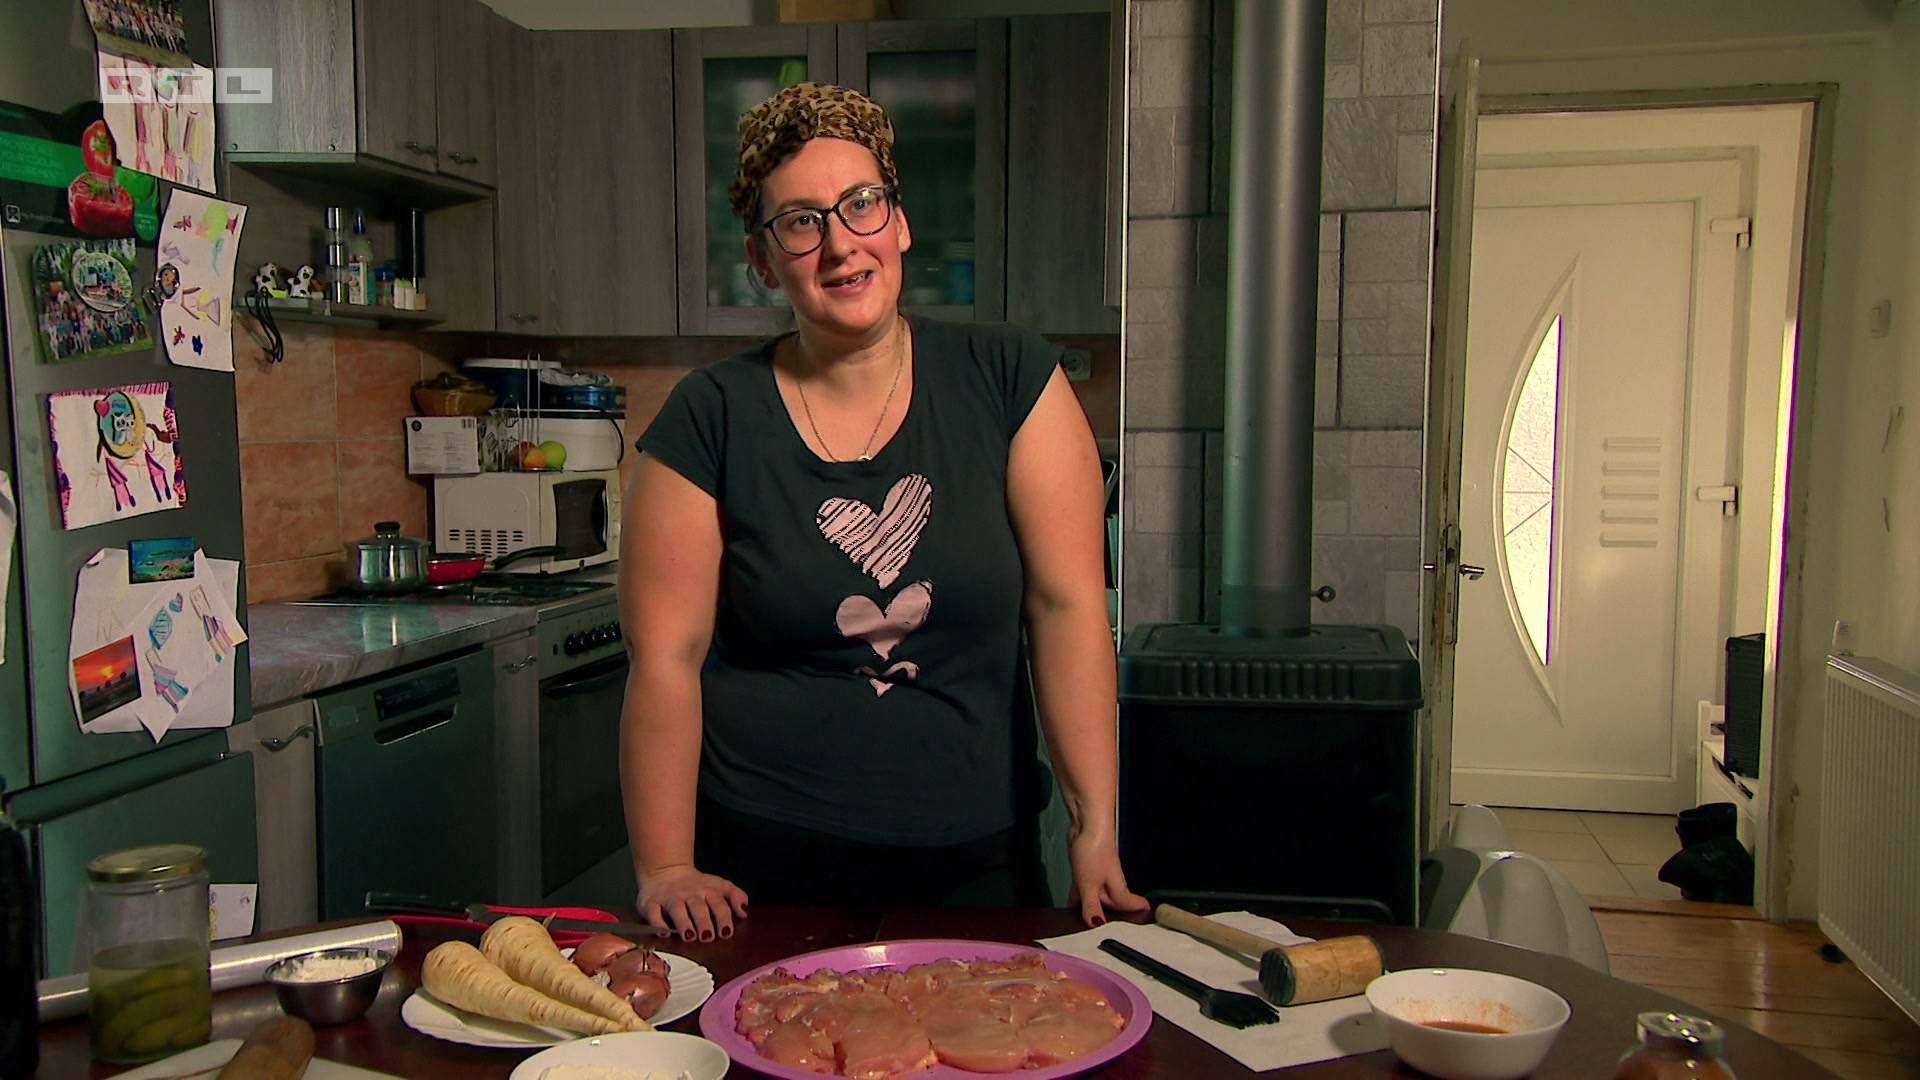 Učiteljica Senka u 'Večeri za 5' sprema tradicionalnu baranjsku večeru: 'Tko to ne voli kulen?'